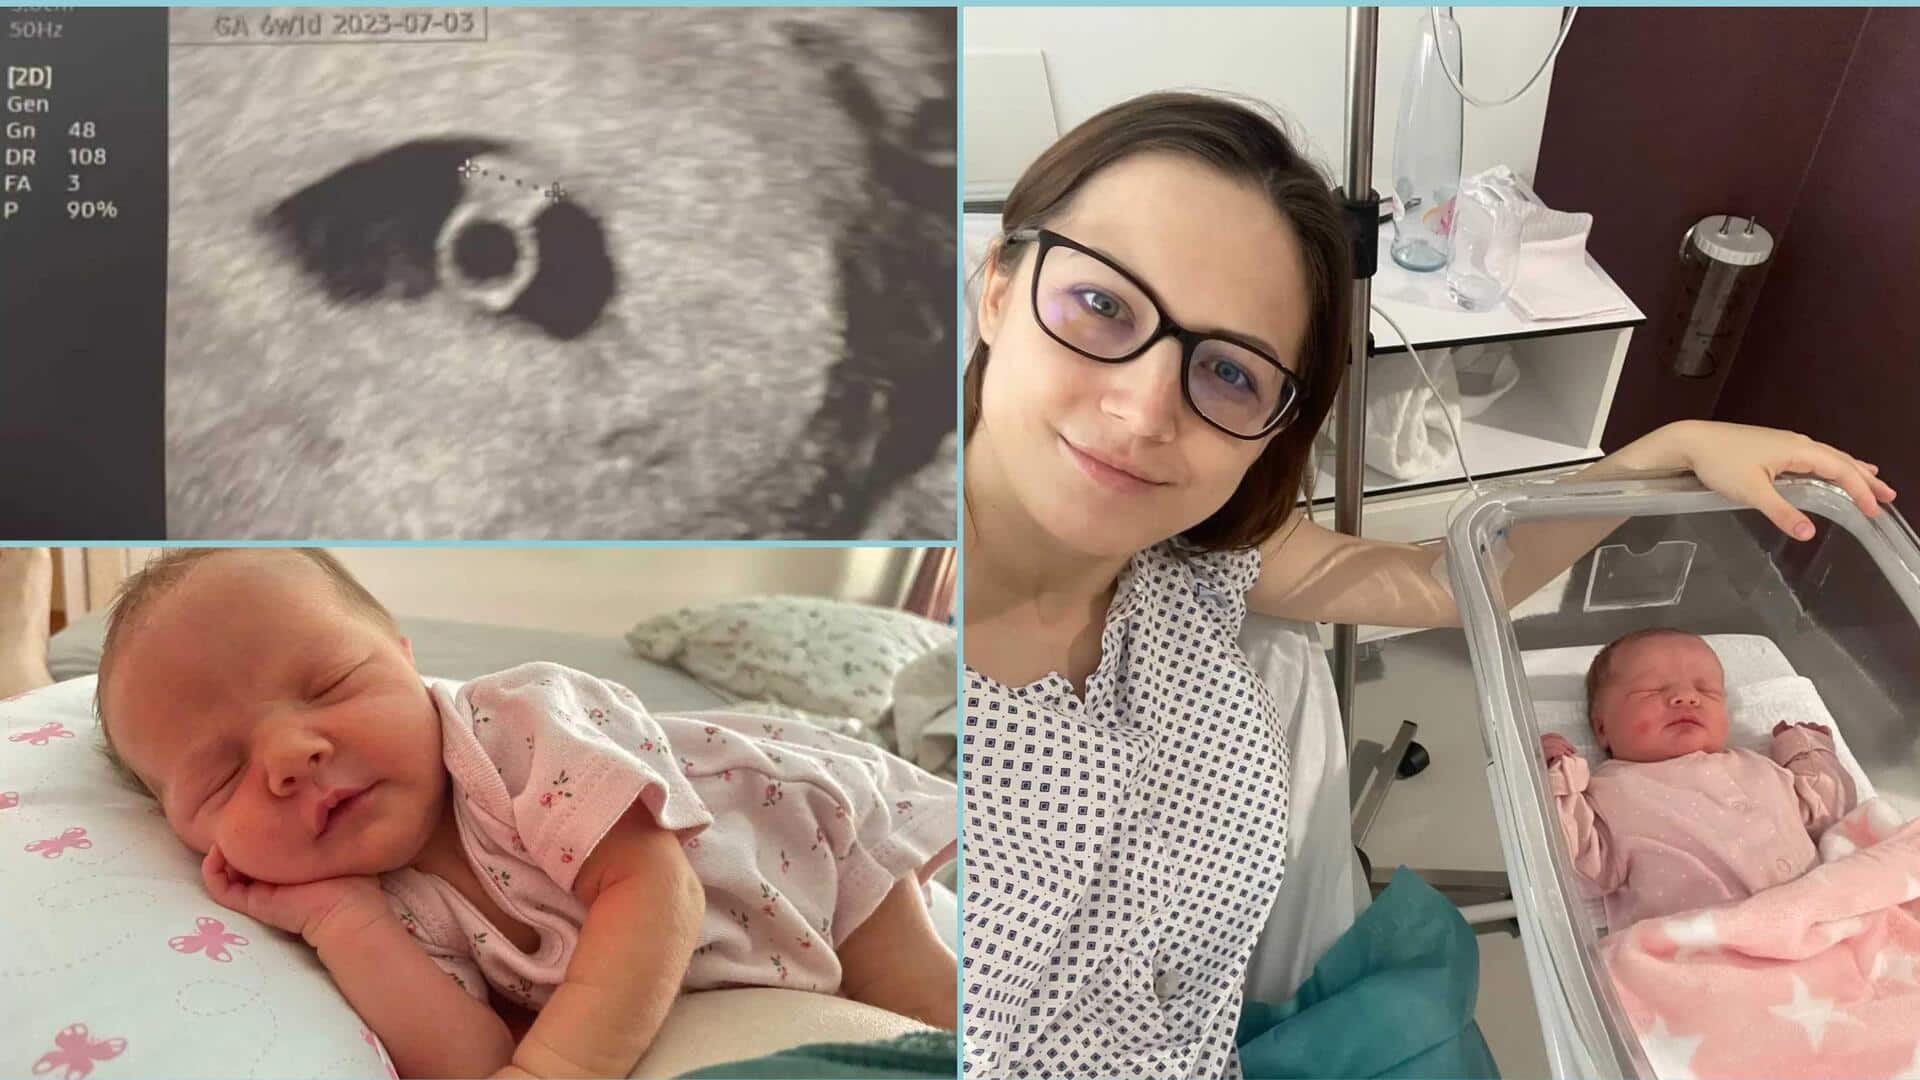 हंगरी: दो योनियों वाली महिला ने दिया 'चमत्कारी बच्चे' को जन्म 